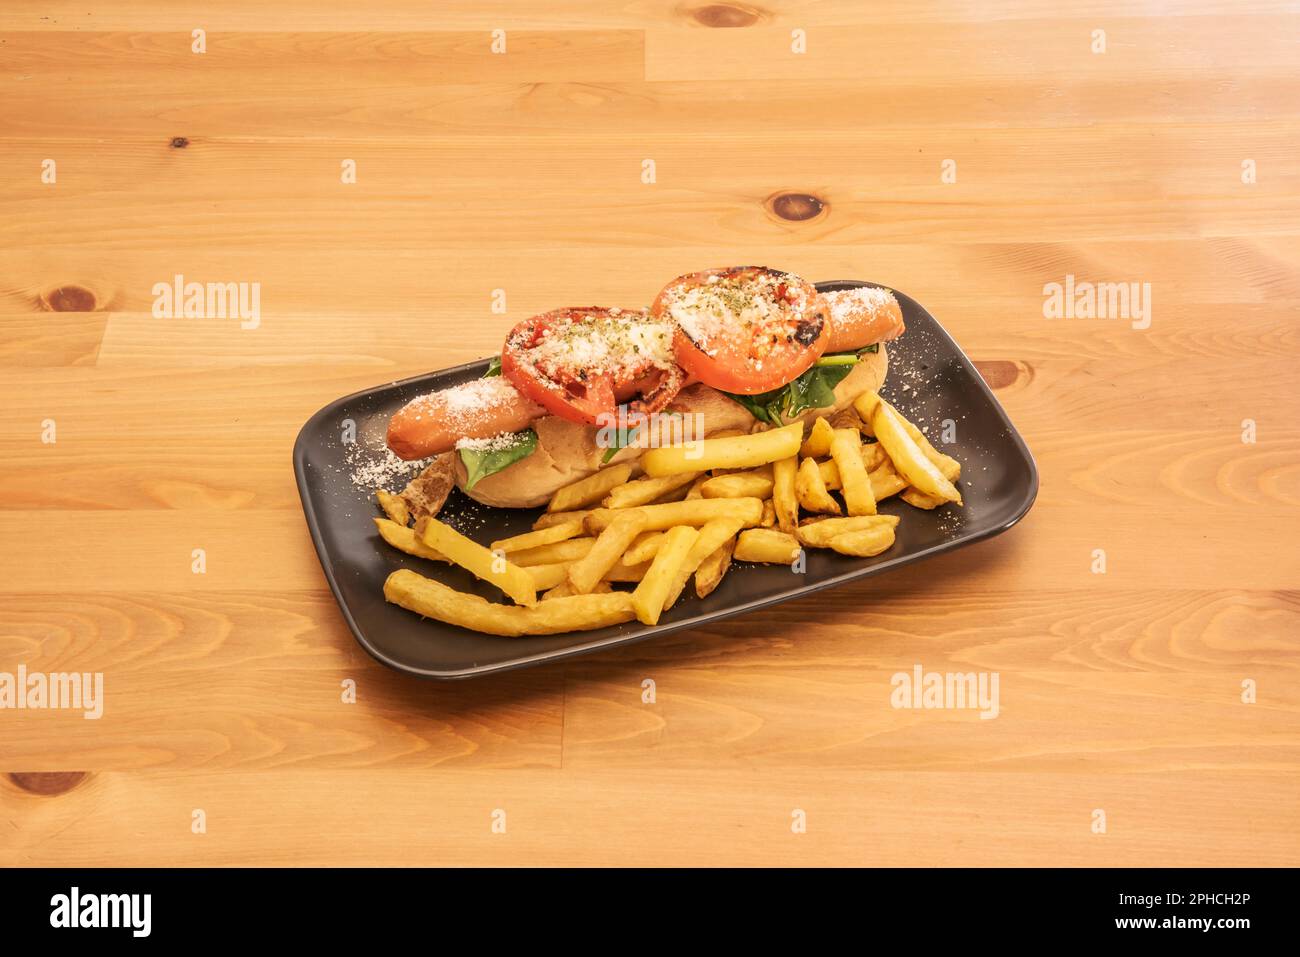 Der Hot Dog ist ein Essen in Form eines Sandwichs mit einer Kombination aus frankfurter oder Wiener Wurst, gekocht oder gebraten, serviert in einem verlängerten Brötchen Stockfoto